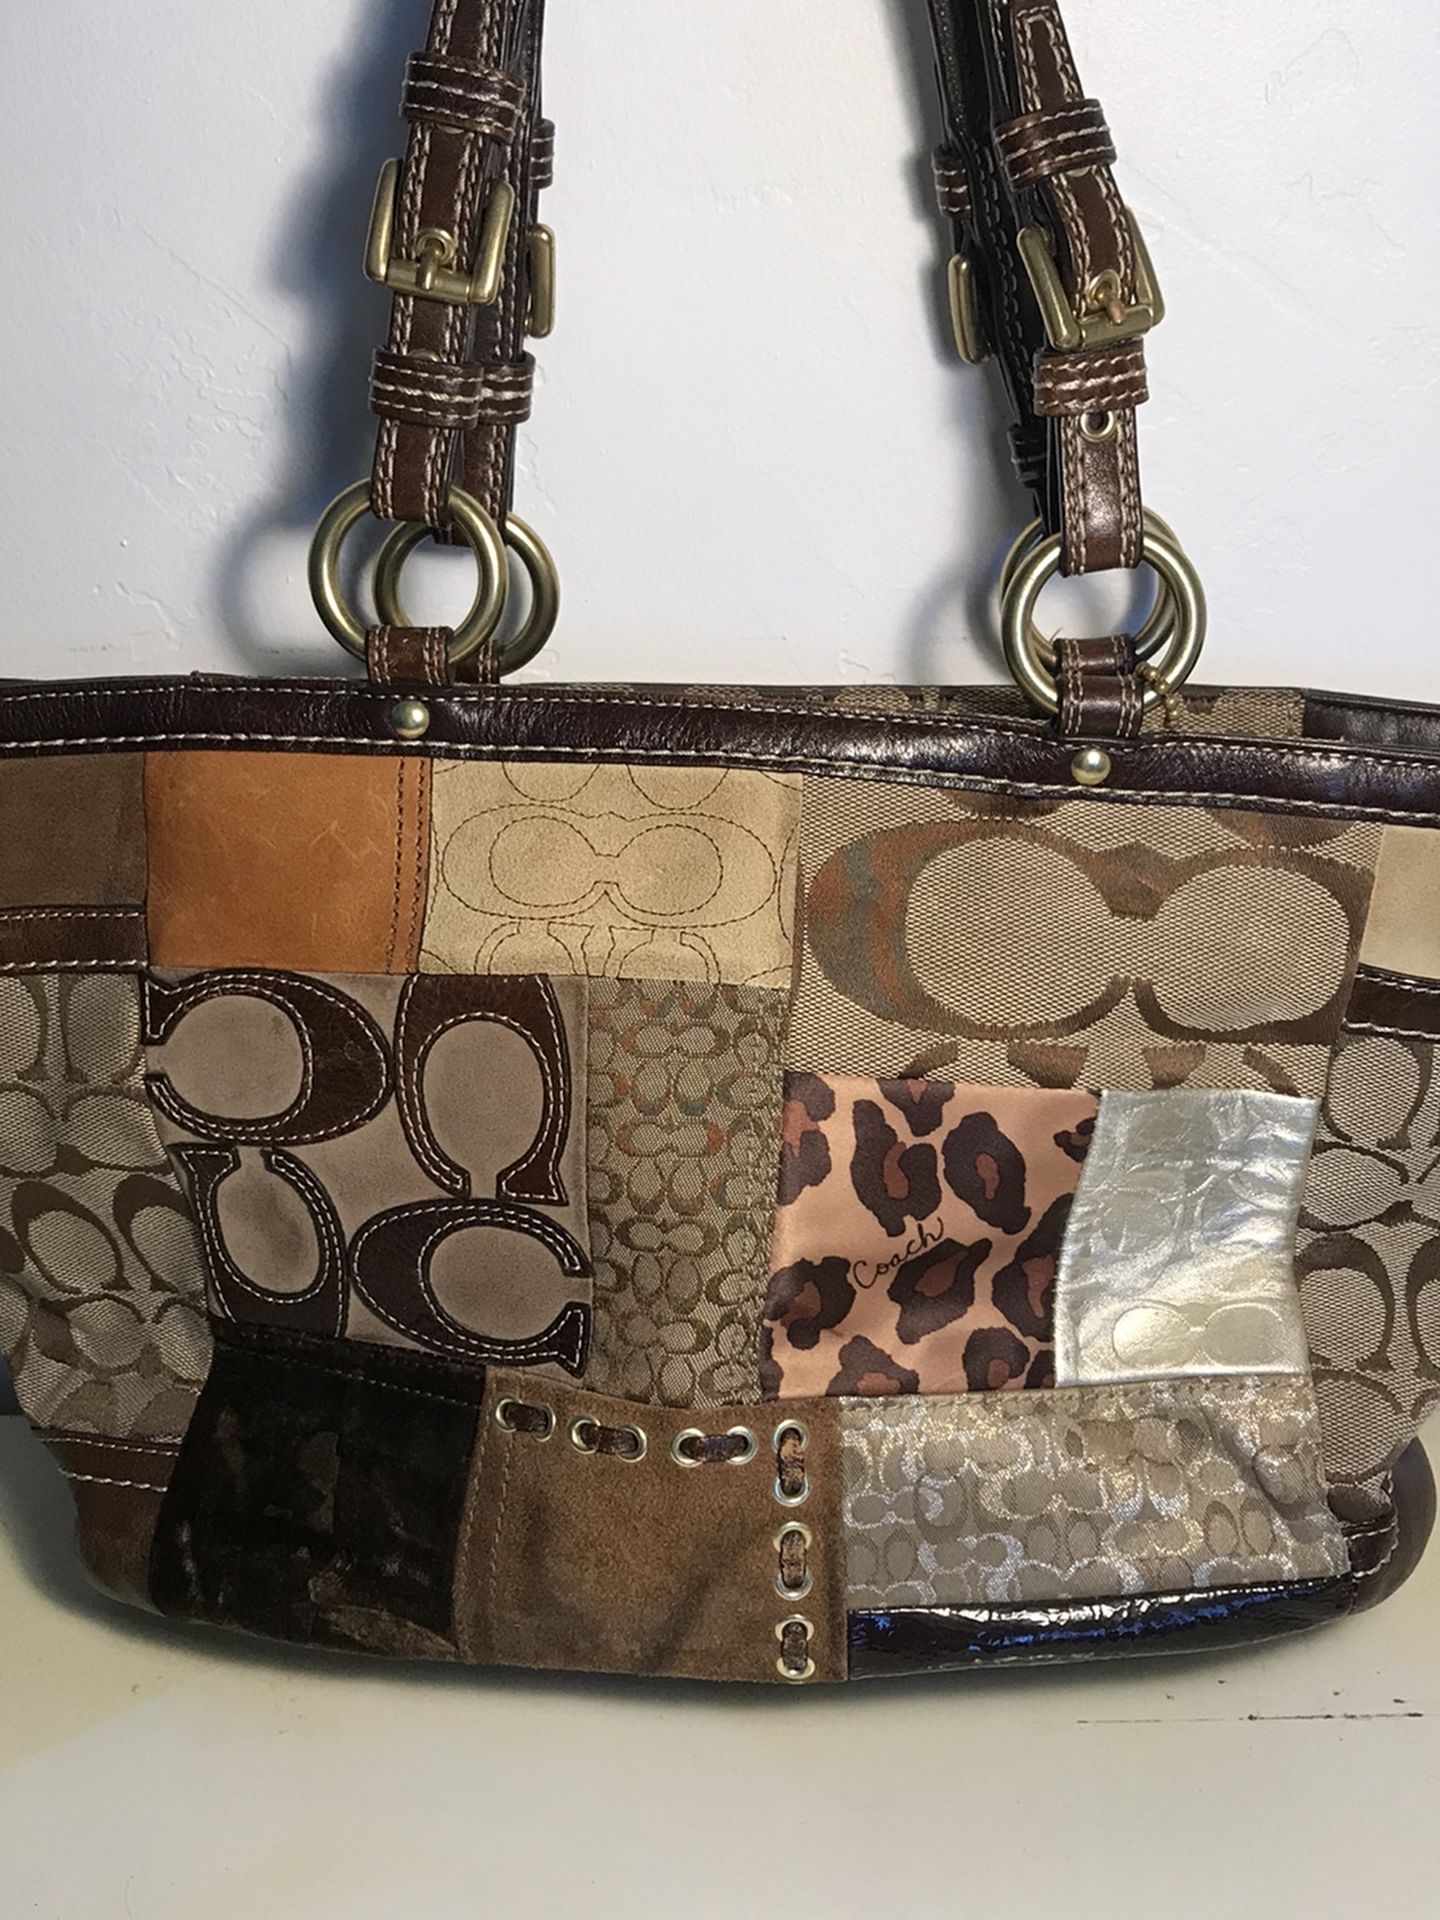 Sasha + Sofi purse for Sale in Murfreesboro, TN - OfferUp